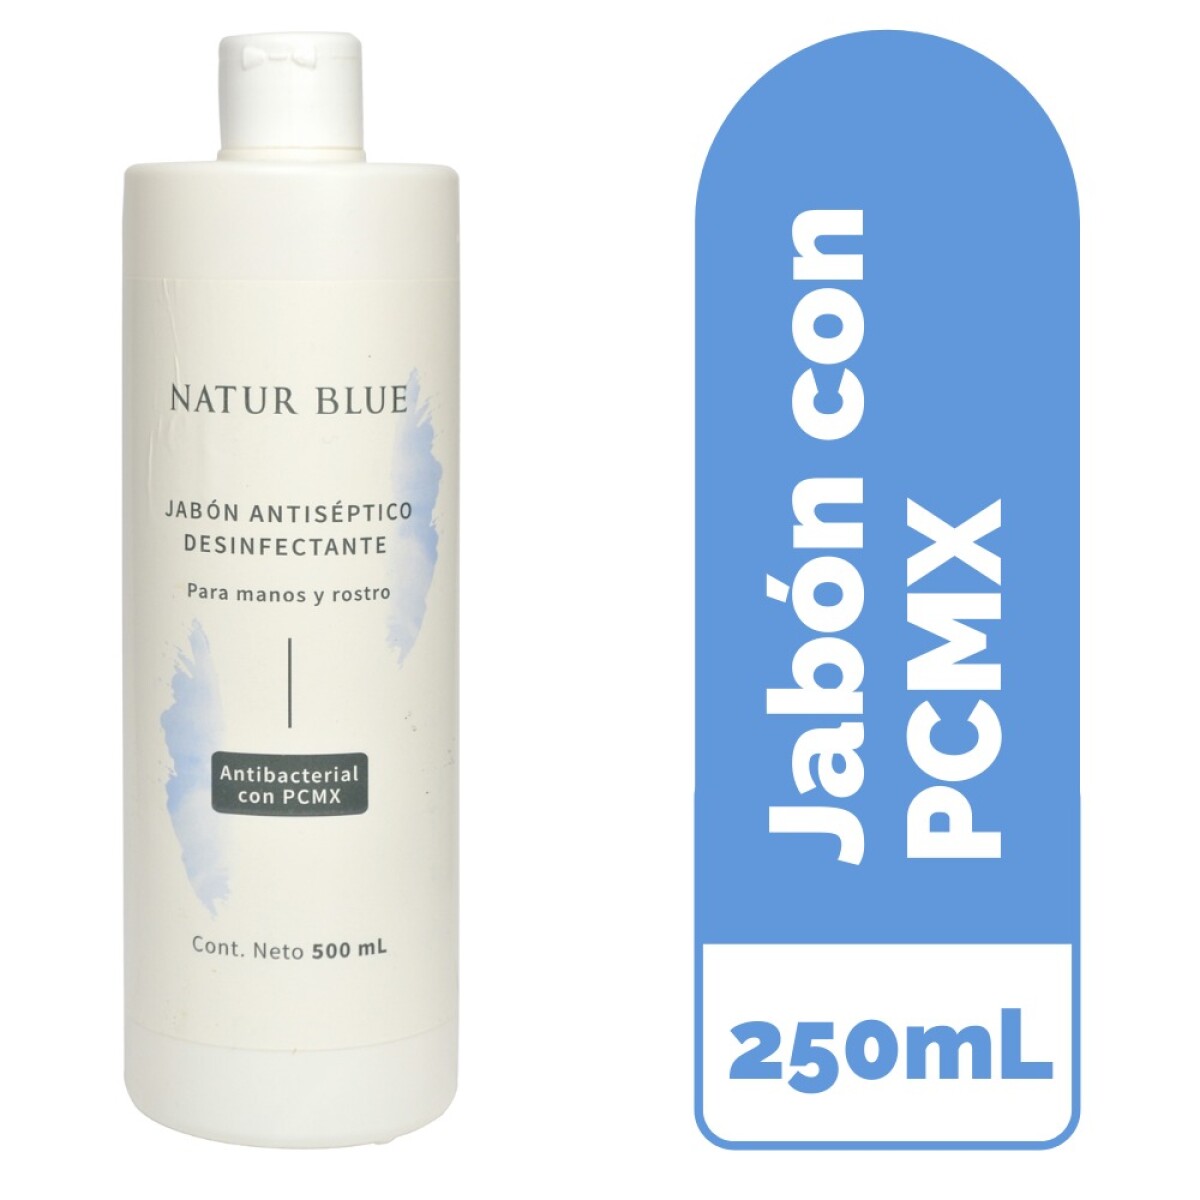 Jabón Antiséptico Desinfectante PCMX NATUR BLUE - 250 mL 